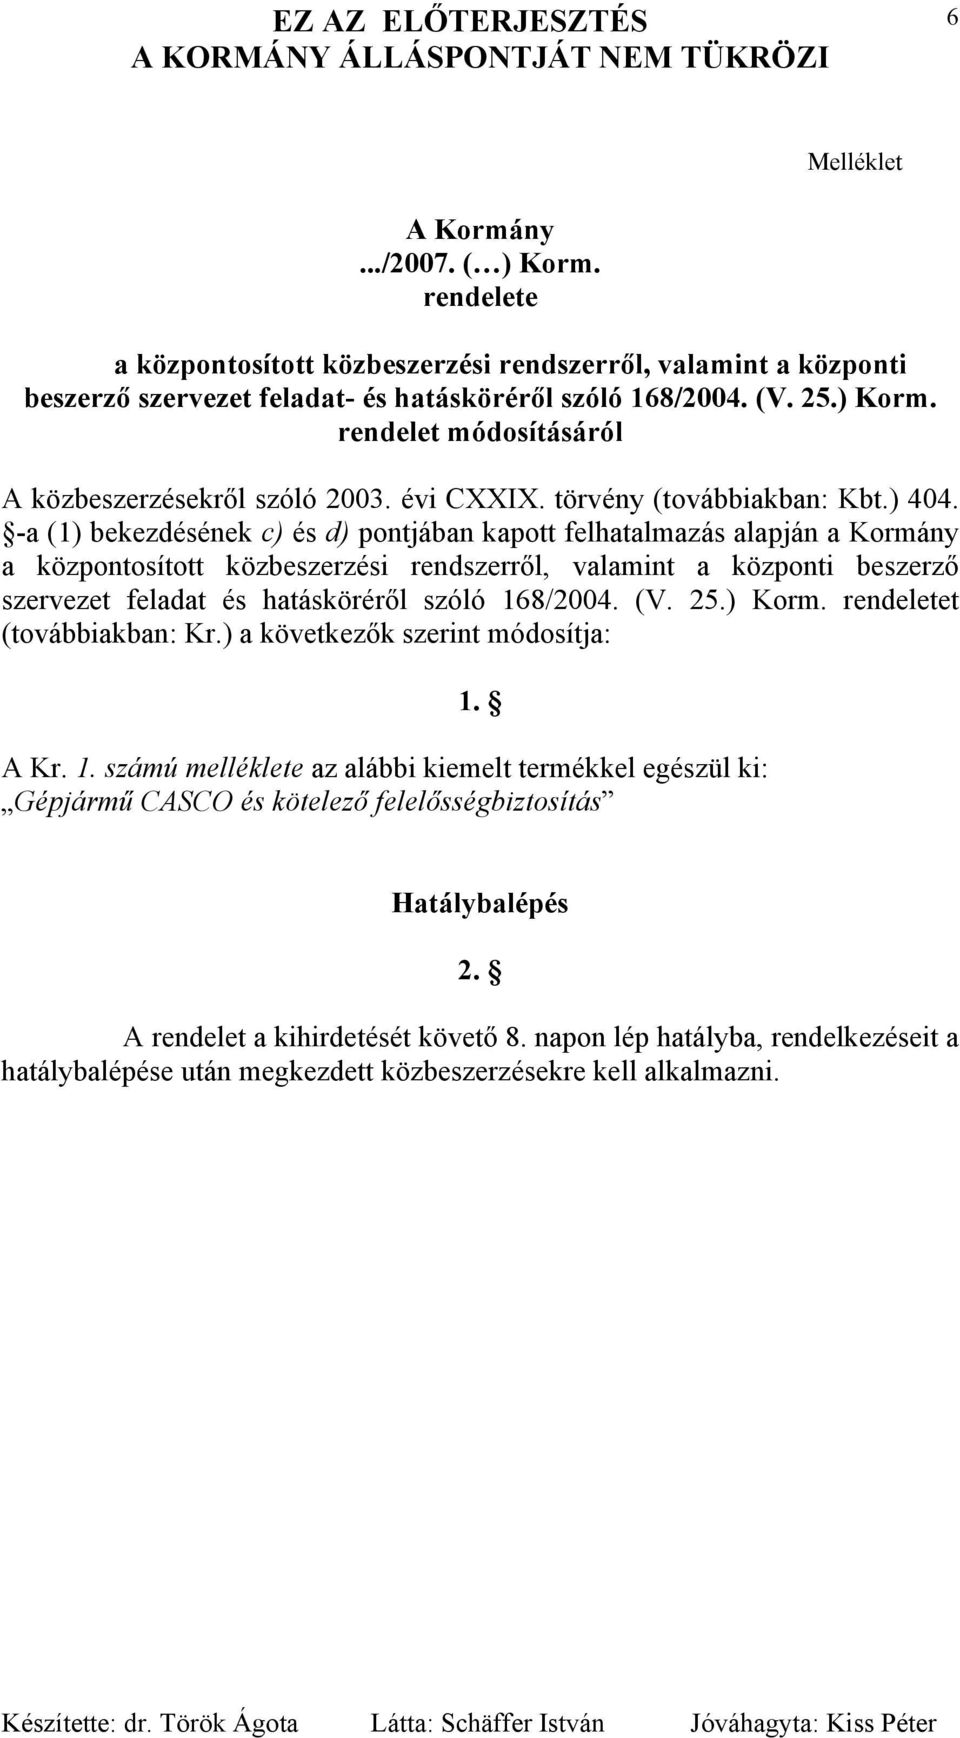 -a (1) bekezdésének c) és d) pontjában kapott felhatalmazás alapján a Kormány a központosított közbeszerzési rendszerről, valamint a központi beszerző szervezet feladat és hatásköréről szóló 168/2004.